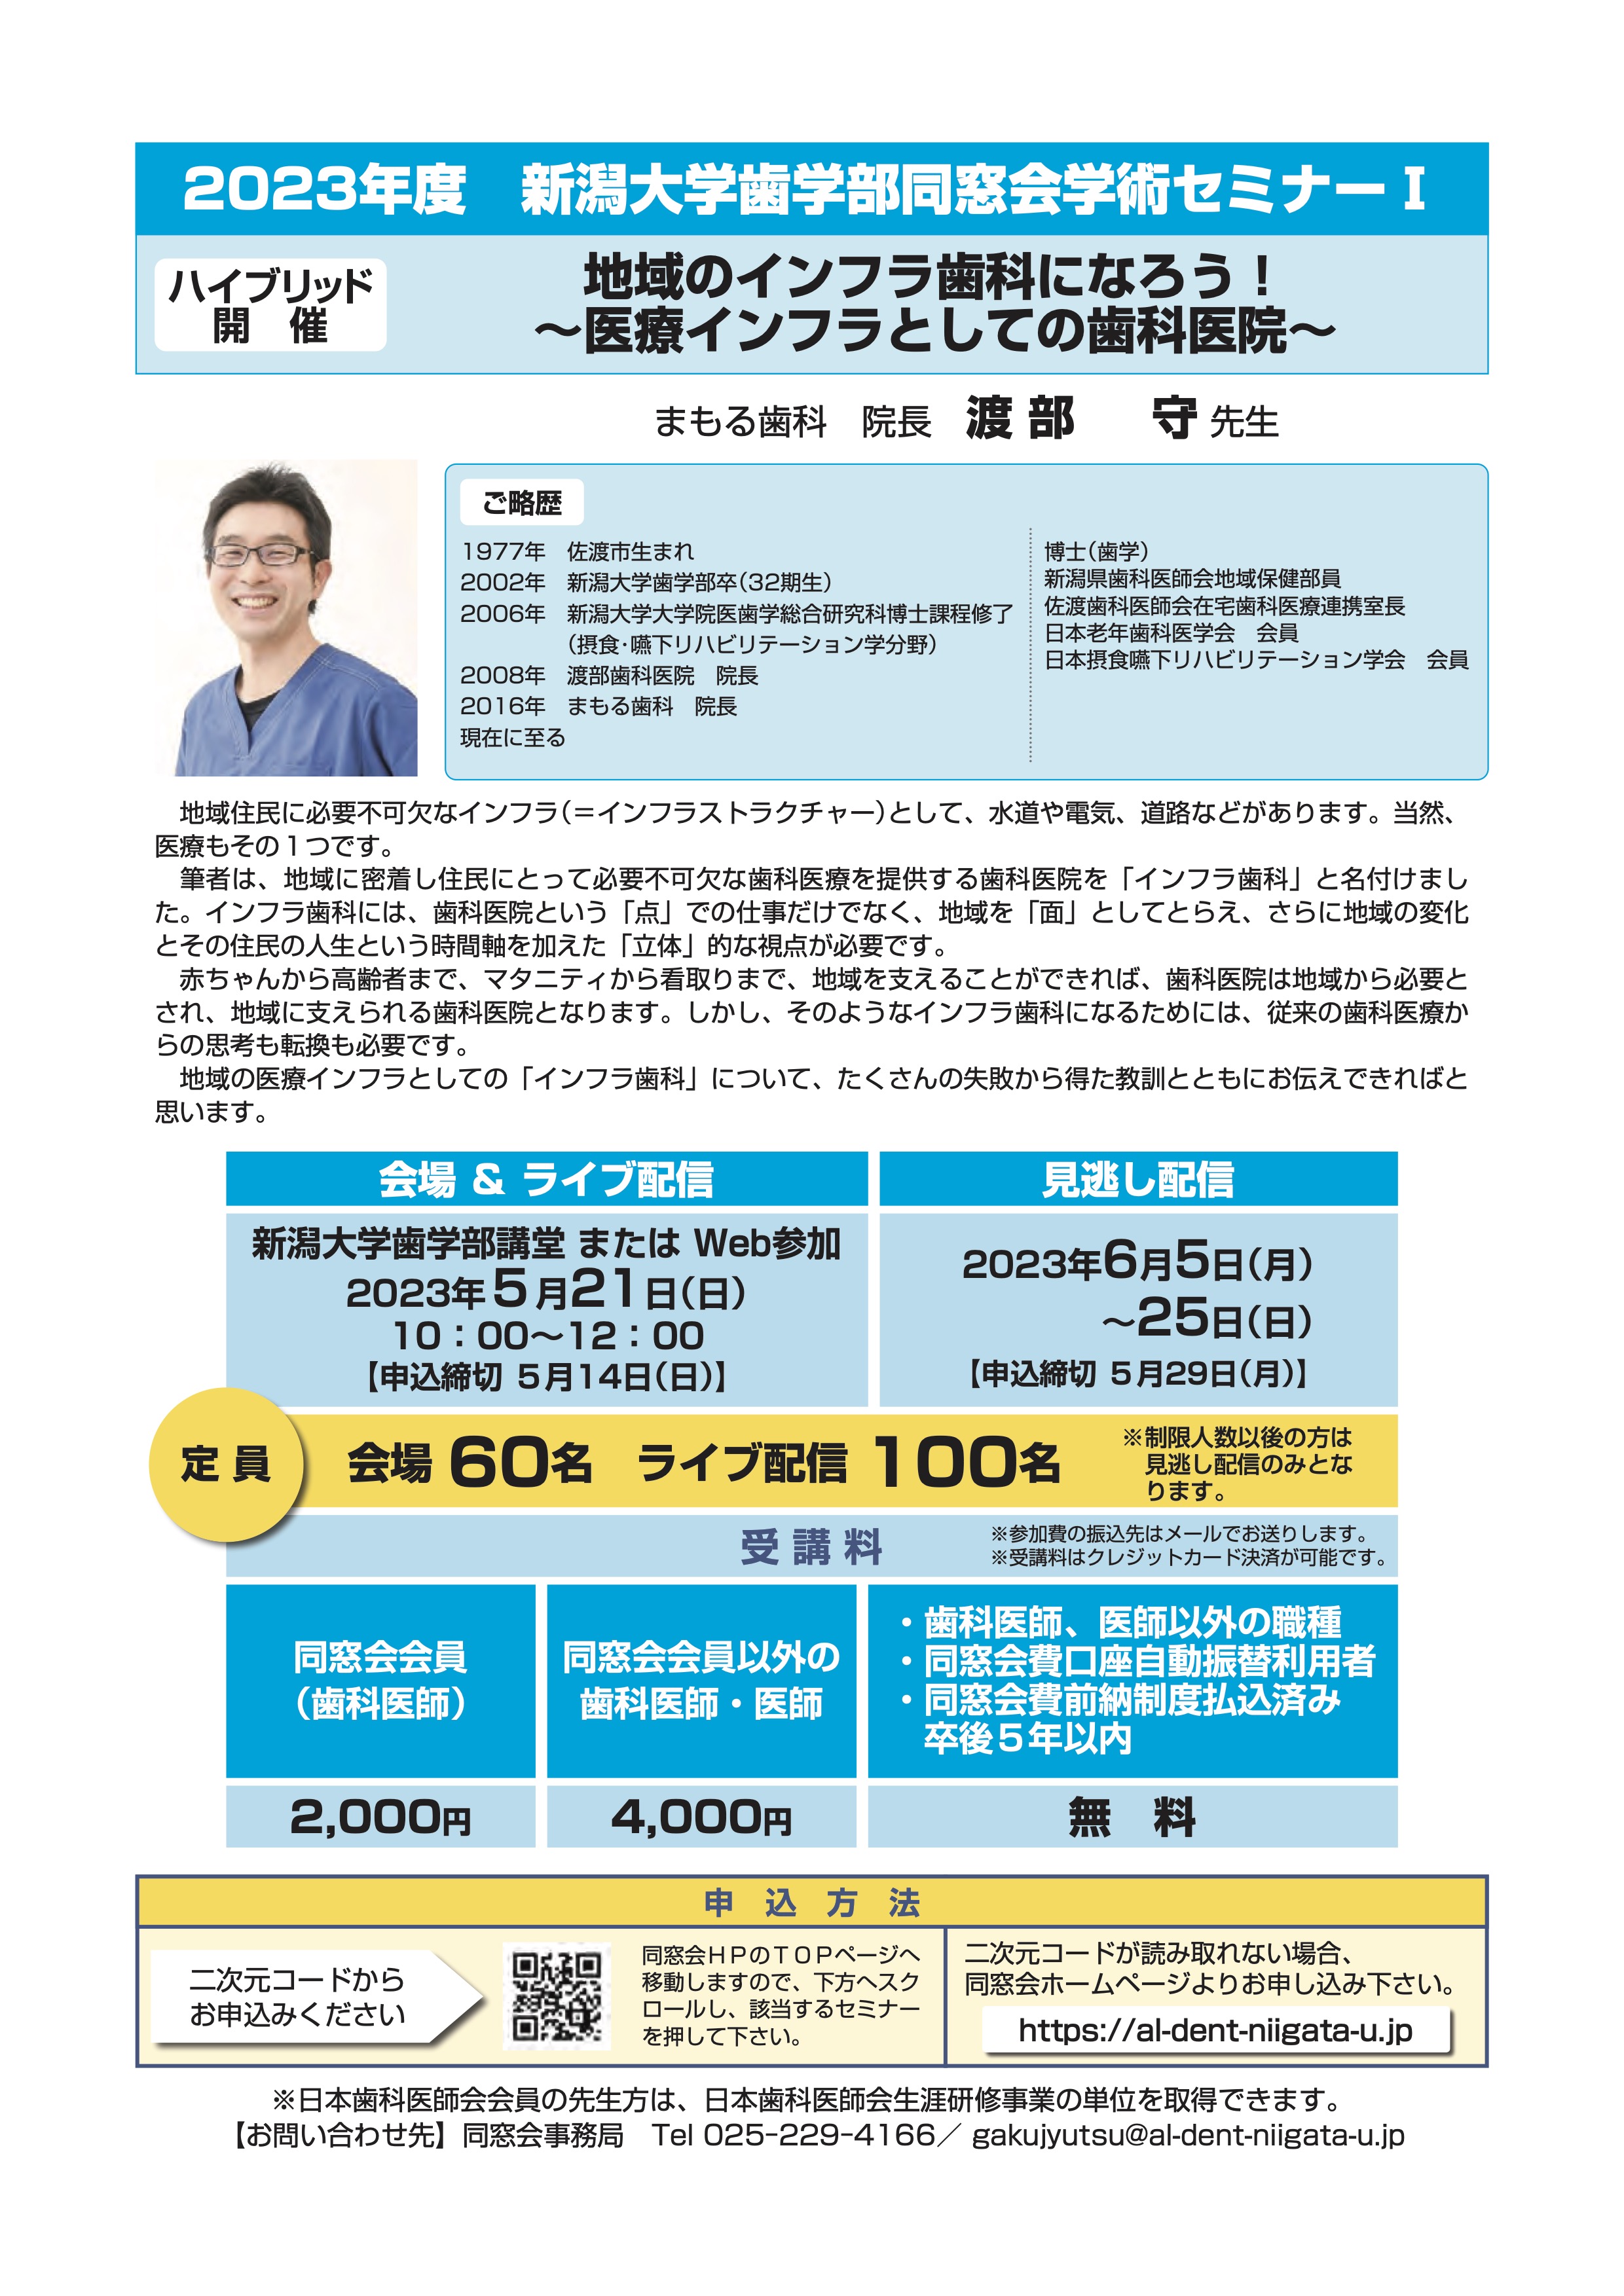 2023年度 新潟大学歯学部同窓会 学術セミナーIのイメージ